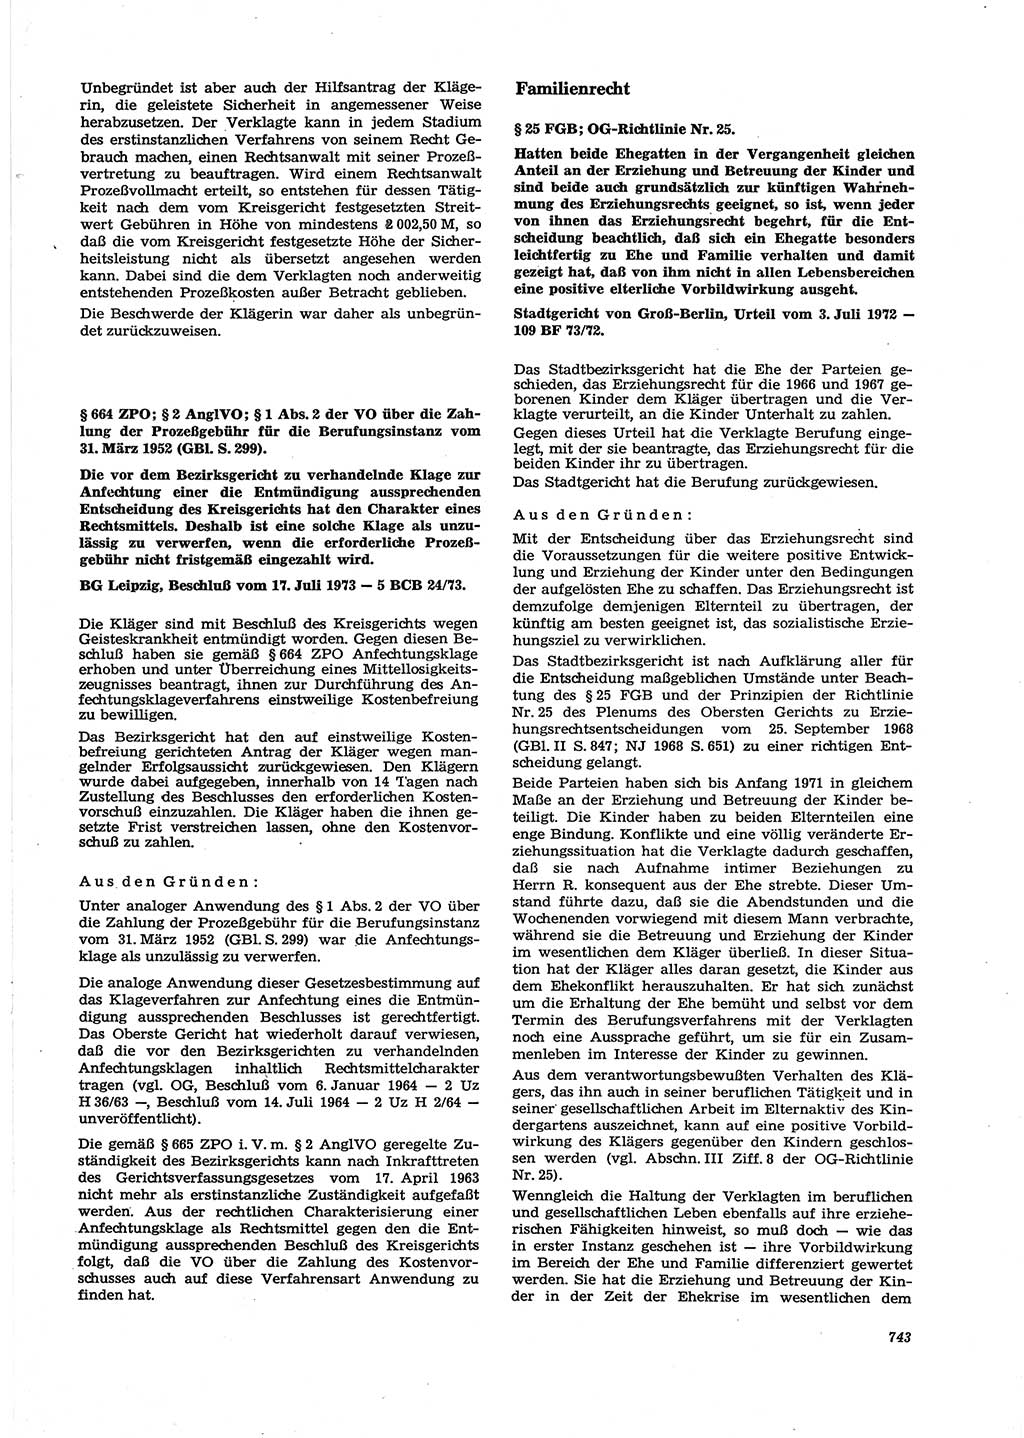 Neue Justiz (NJ), Zeitschrift für Recht und Rechtswissenschaft [Deutsche Demokratische Republik (DDR)], 27. Jahrgang 1973, Seite 743 (NJ DDR 1973, S. 743)